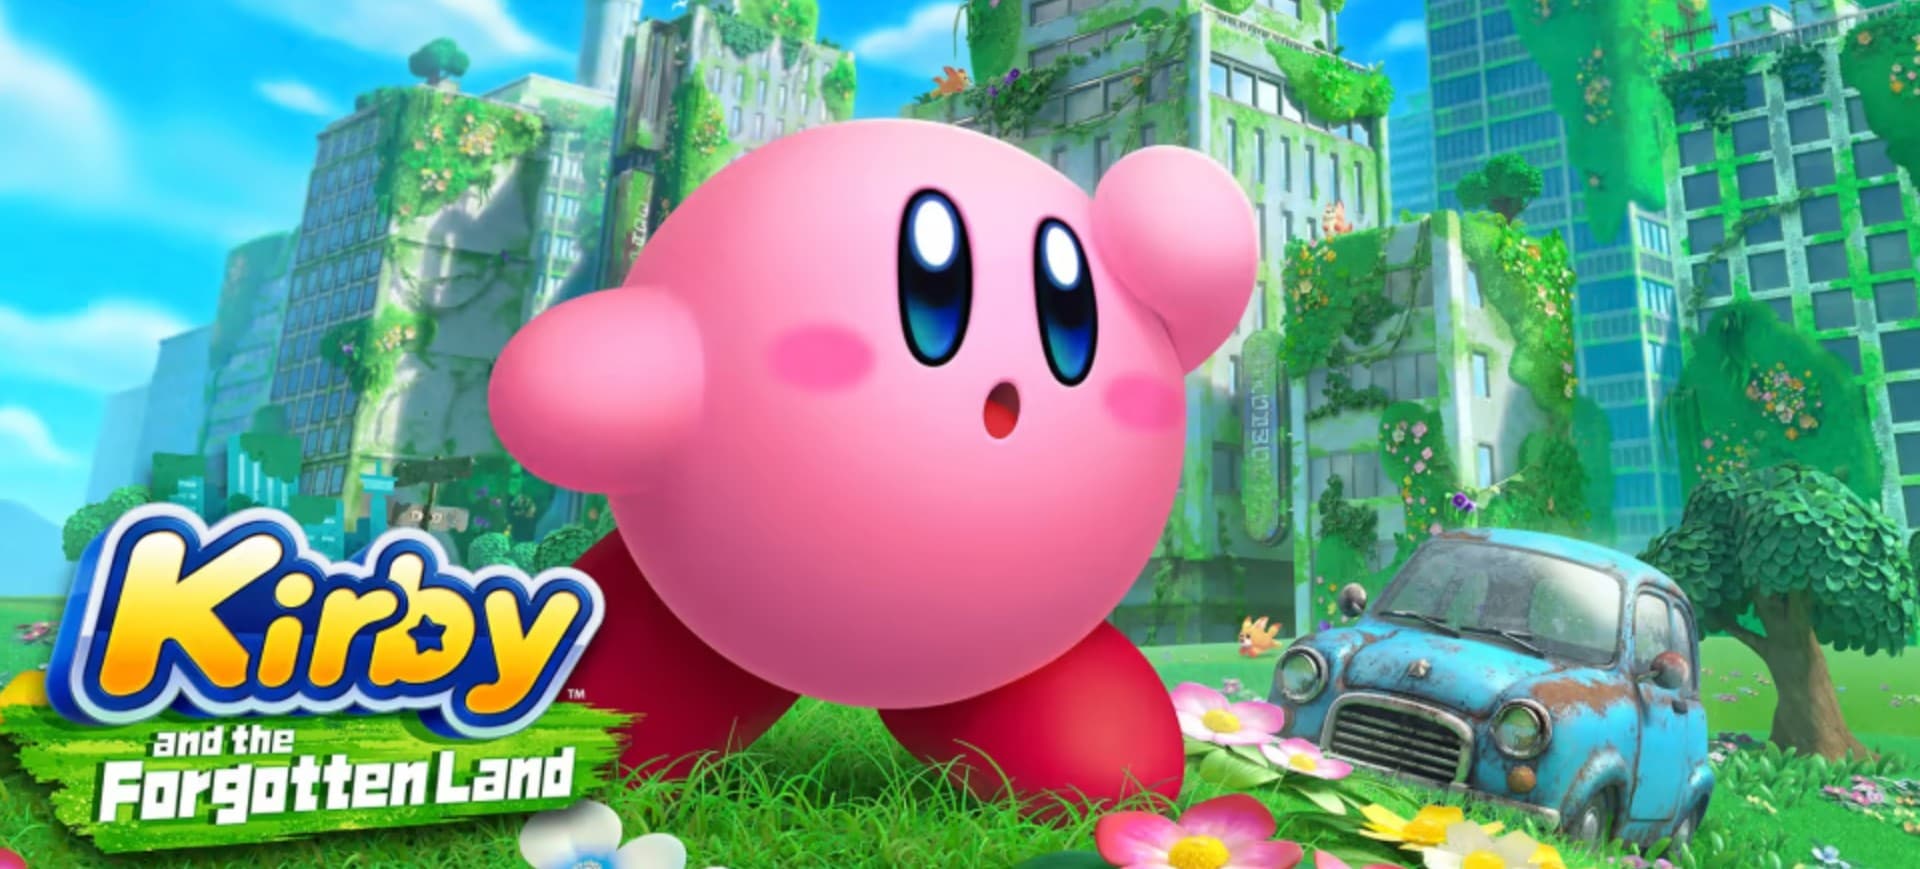 Imagem mostra o pôster de lançamento de Kirby and the Forgotten Land, jogo da Nintendo para Switch; à frente é possível ver o Kirby e, ao fundo, um cenário com prédios e um carro velho abandonado